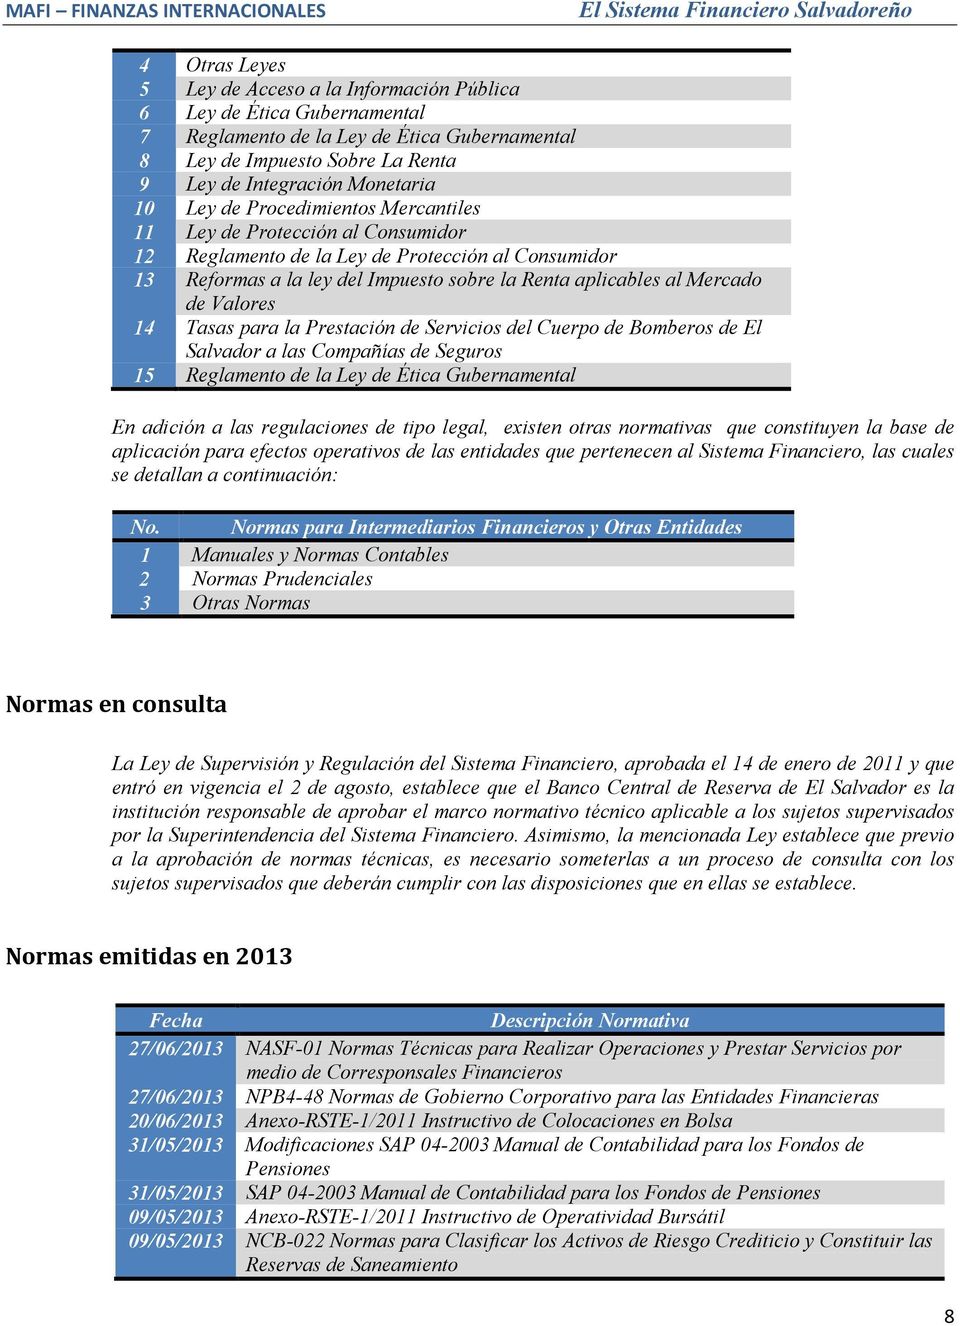 Valores 14 Tasas para la Prestación de Servicios del Cuerpo de Bomberos de El Salvador a las Compañías de Seguros 15 Reglamento de la Ley de Ética Gubernamental En adición a las regulaciones de tipo